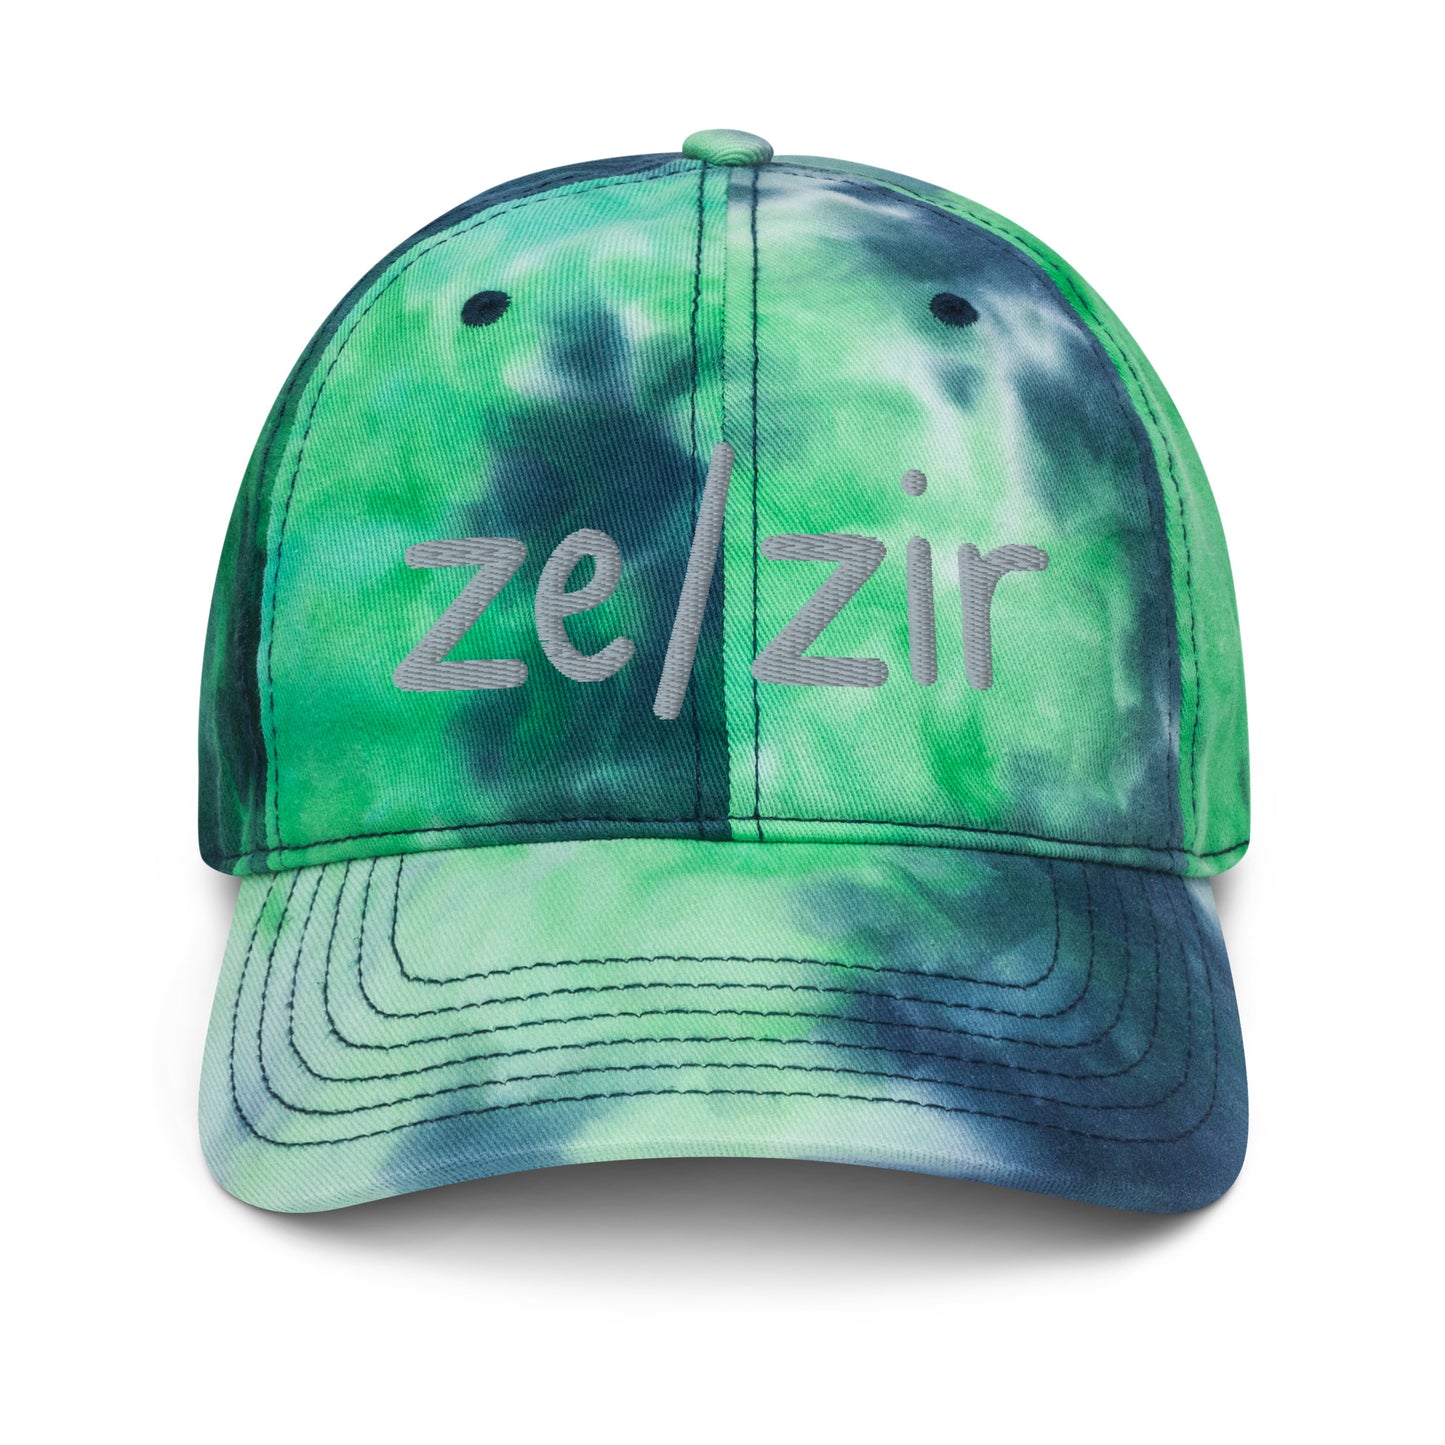 Ze/Zir Tie-Dye Hat